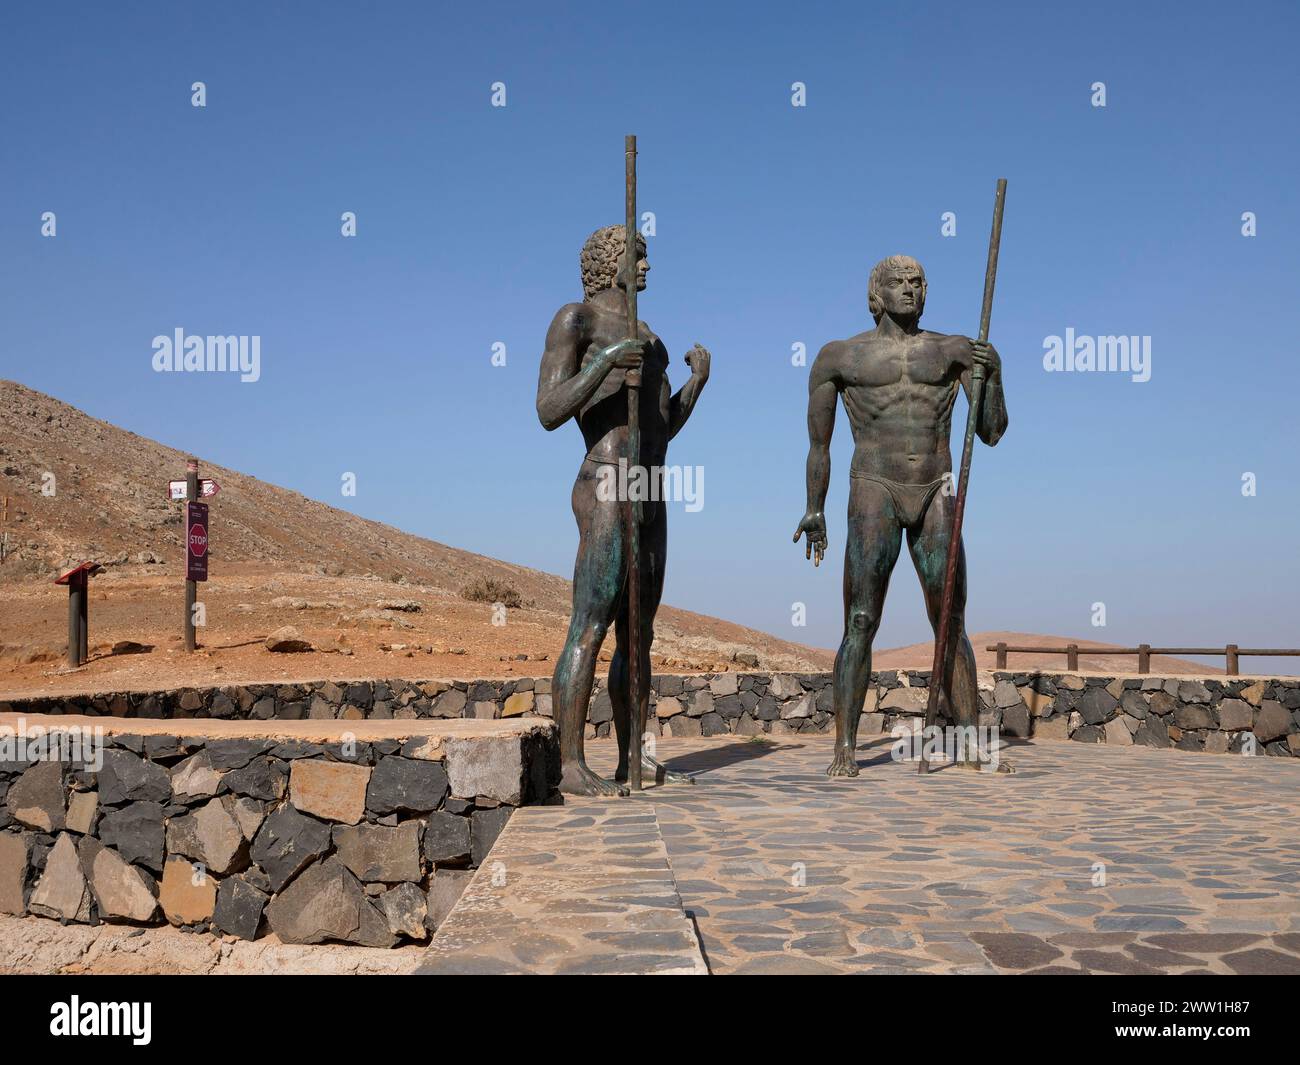 Mirador Corrales de guise, point de vue guise et Ayose, statues en bronze de 4 mètres de haut des rois de l'ancienne Fuerteventura, îles Canaries, Espagne Banque D'Images